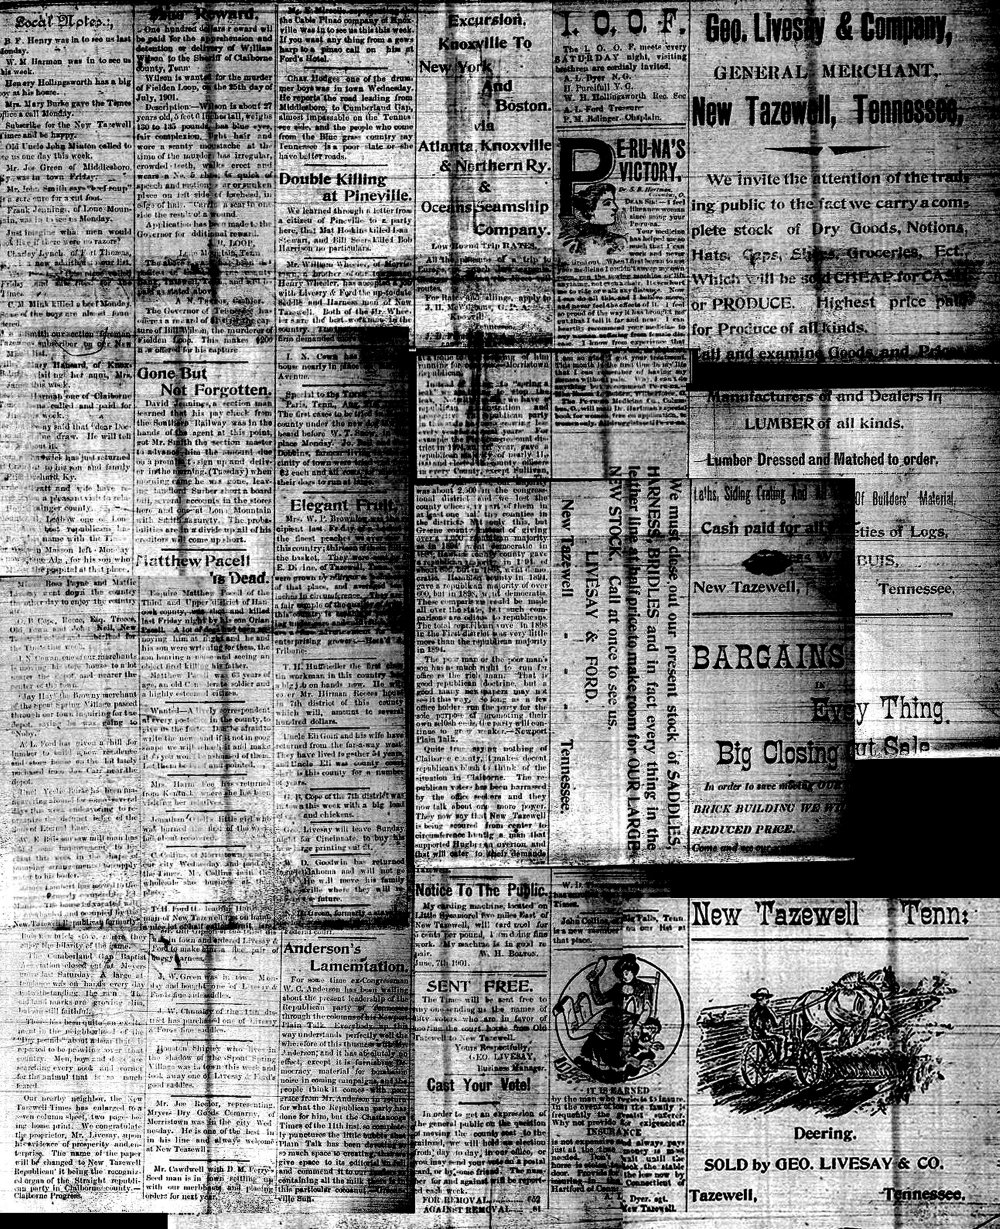 1901 Newspaper